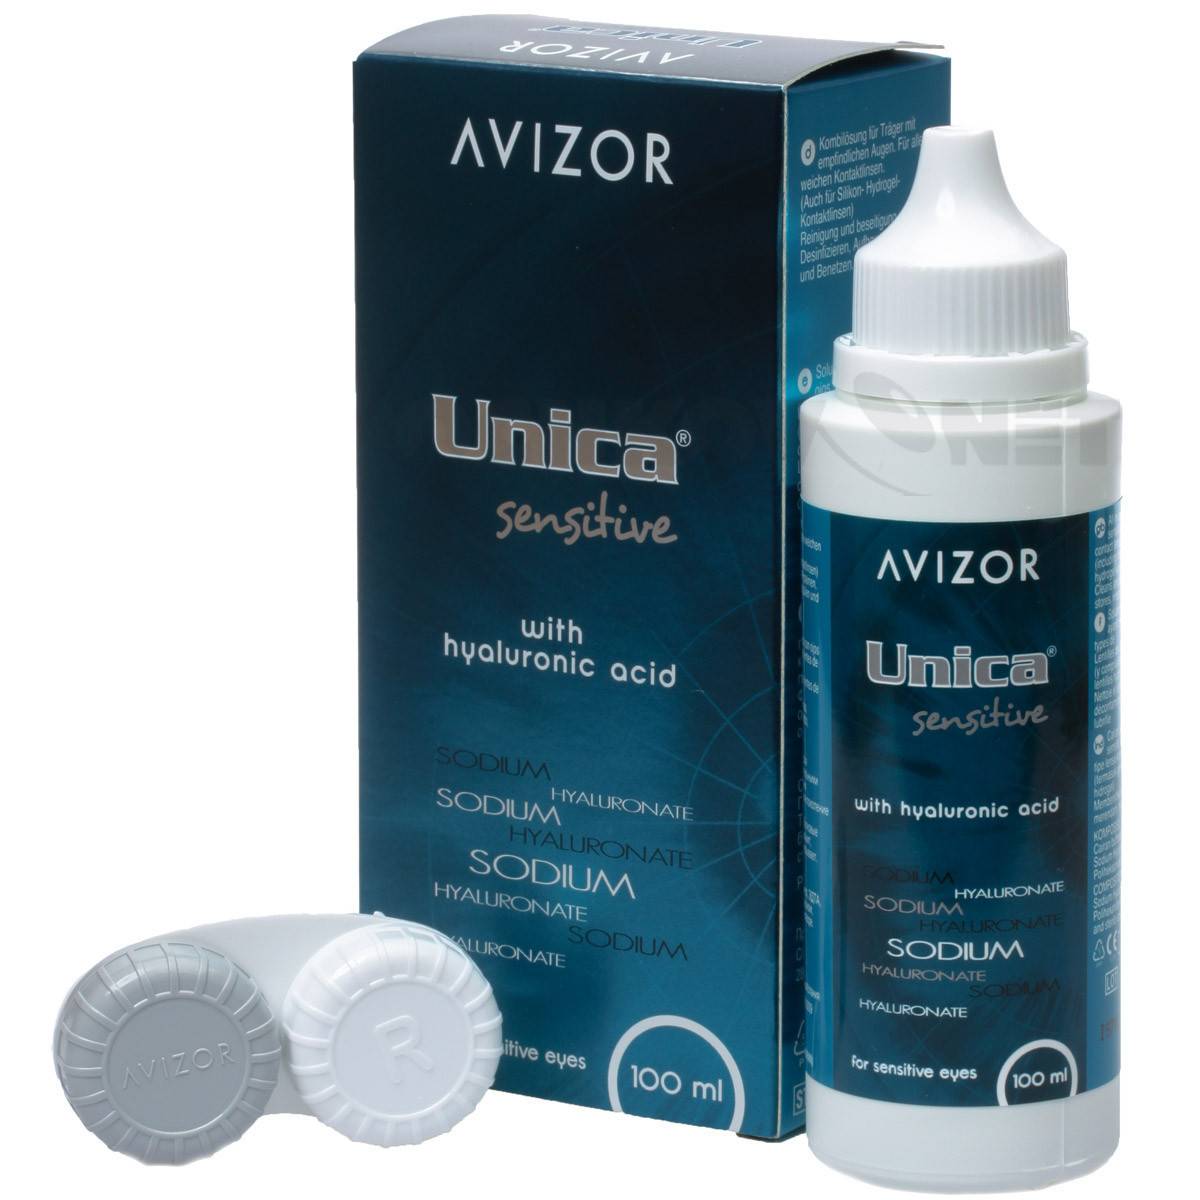 Купить aqua soft comfort+ 350 мл по выгодным ценам в интернет-магазине linziru.ru от avizor international